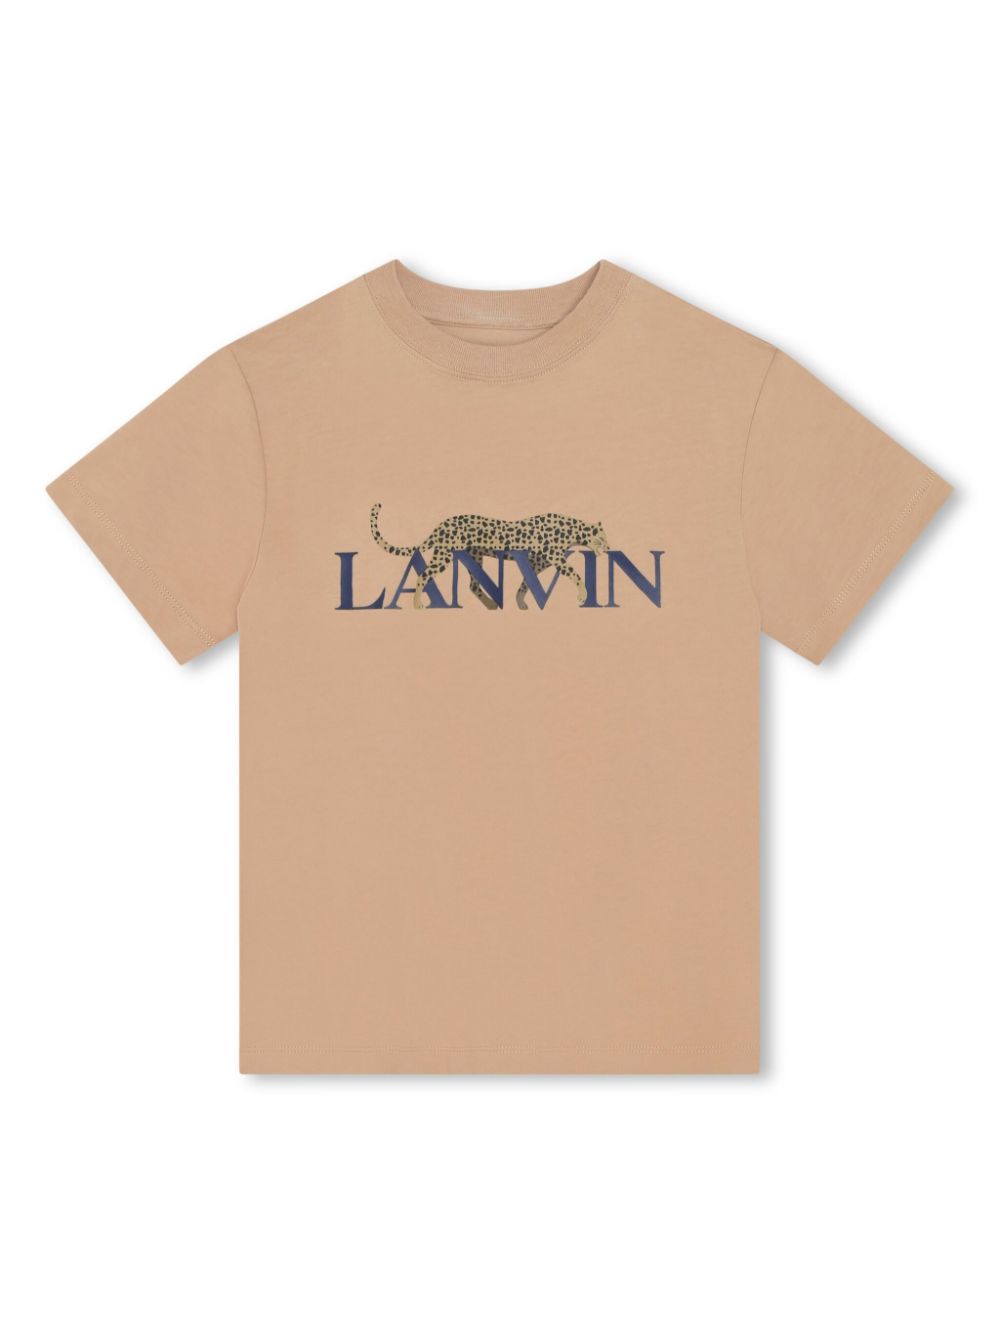 Lanvin Enfant leopard-print cotton T-shirt - Neutrals